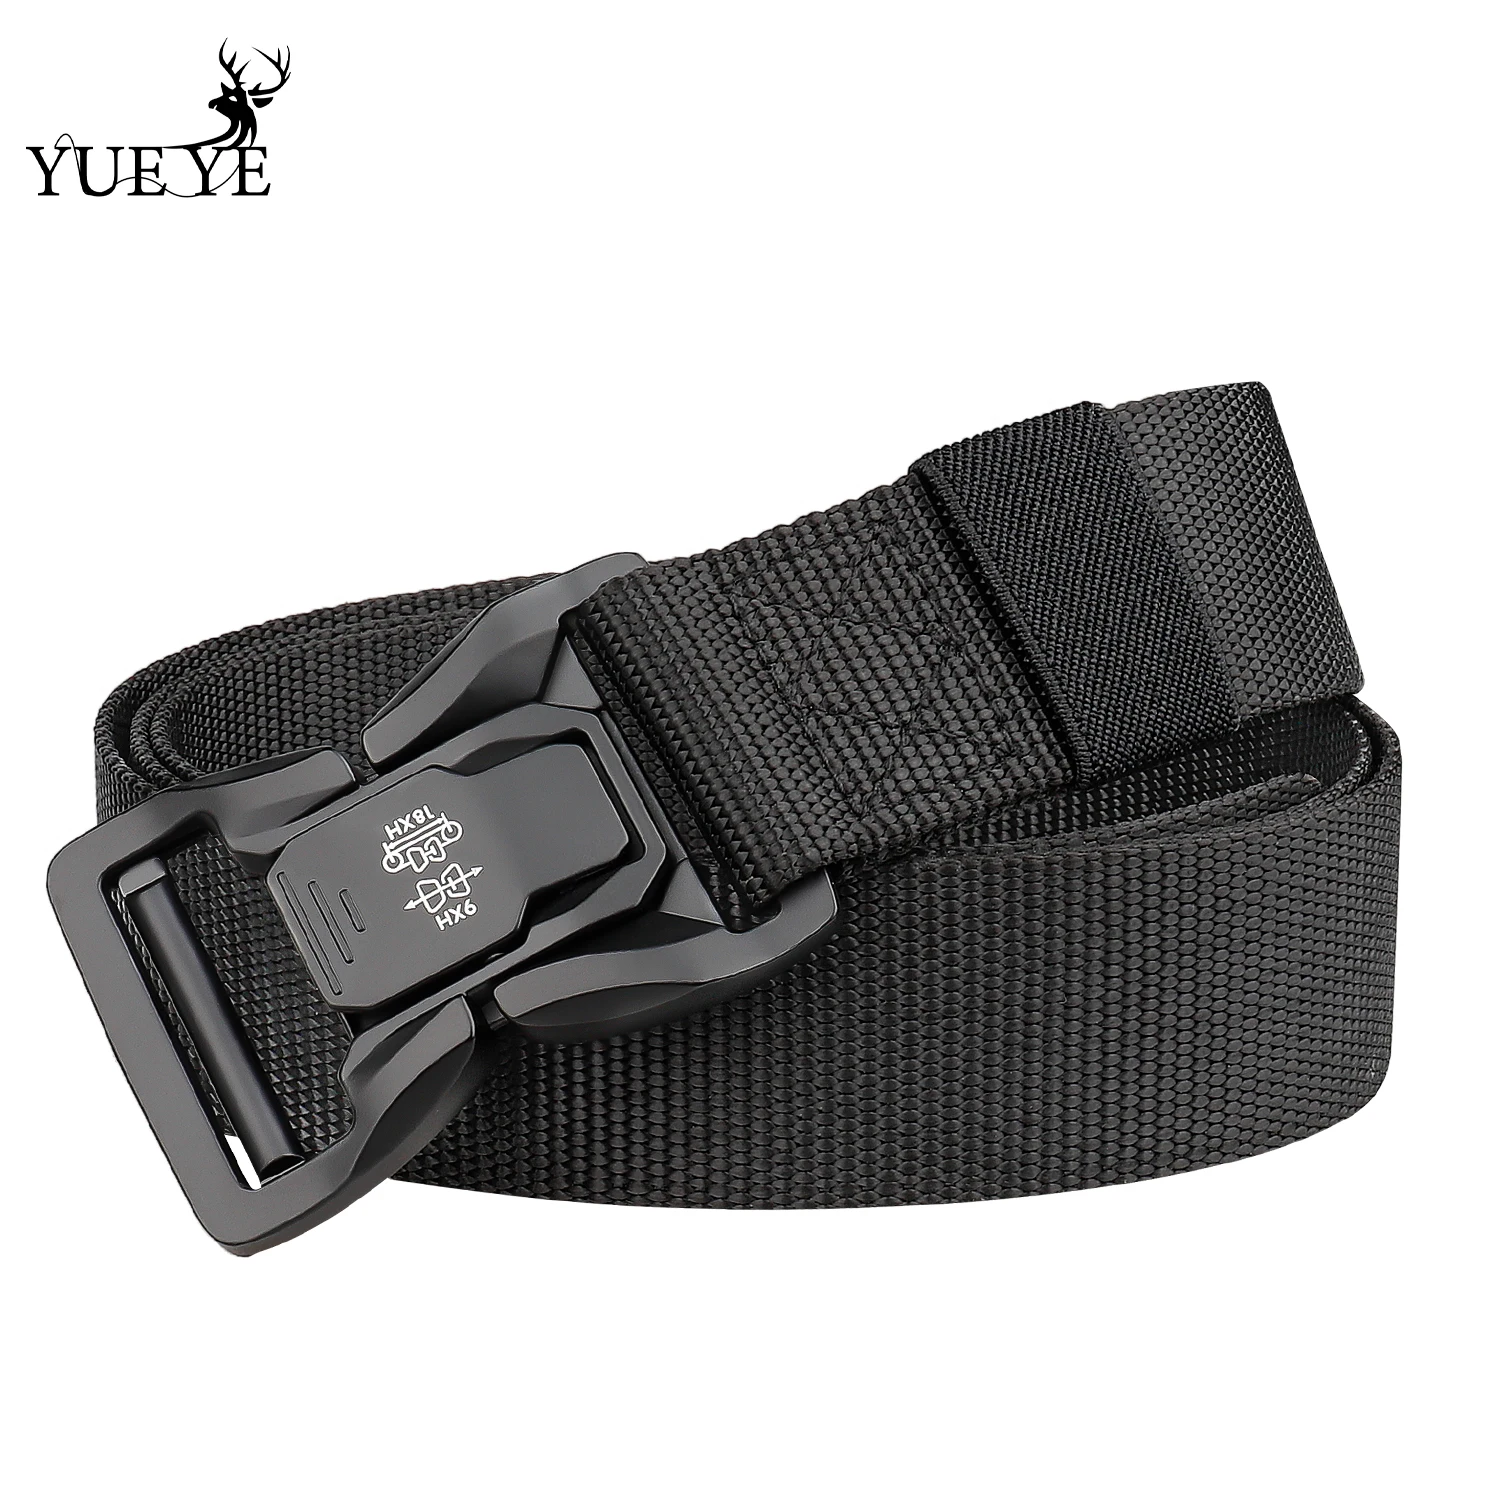 

Cinturón de lona para hombre, hebilla de aleación de nailon, deportivo informal, cómodo, de alta calidad, desbloqueo de una tecl